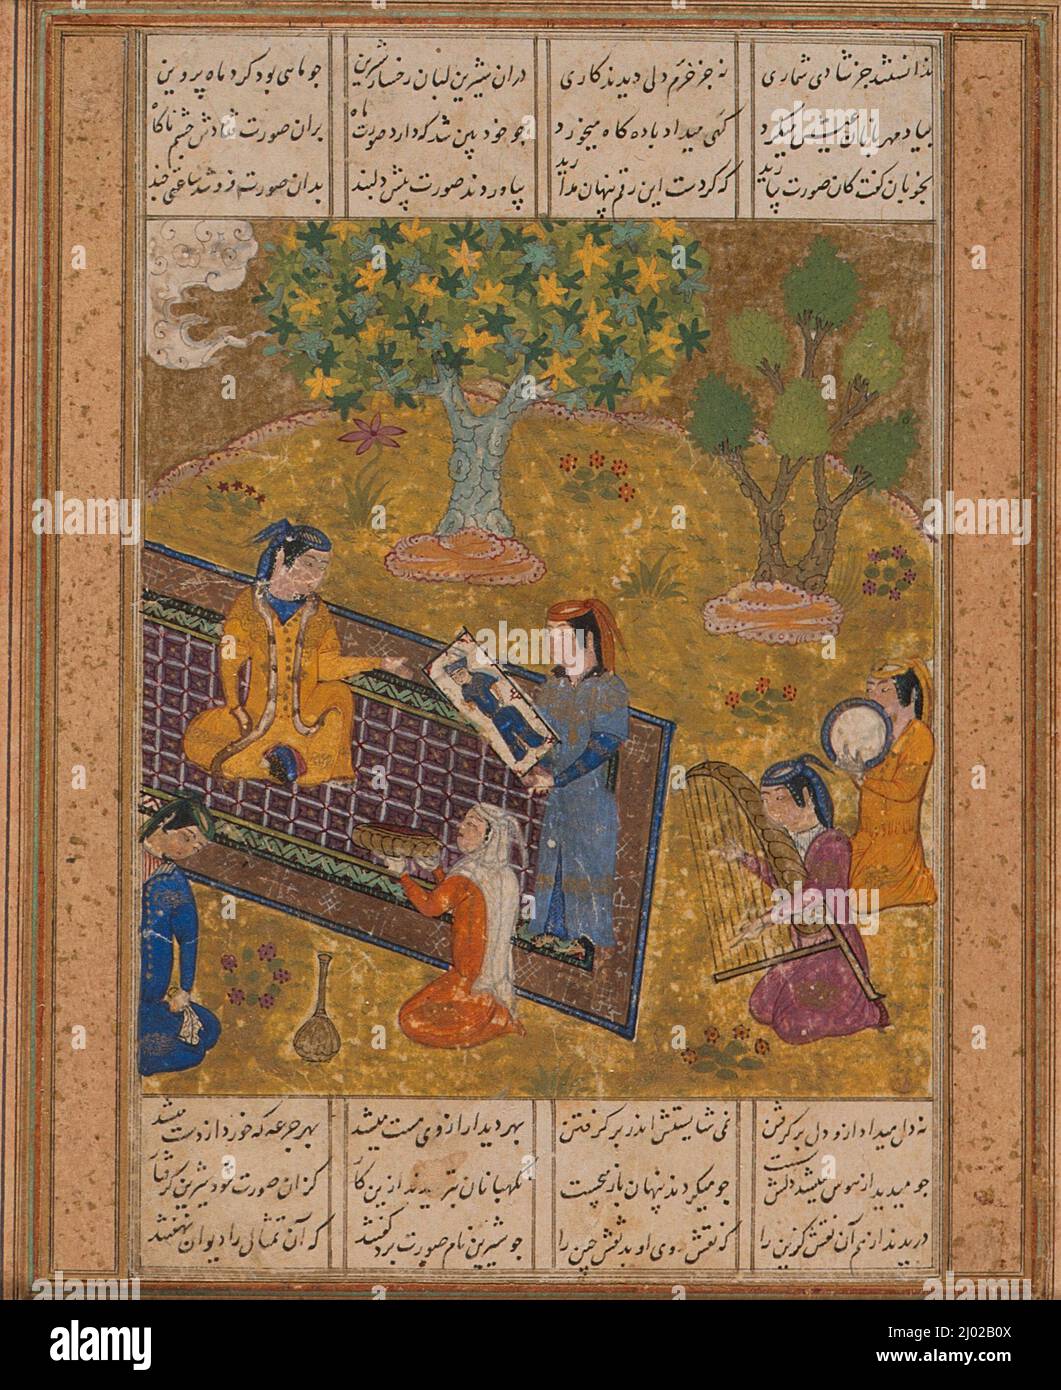 Shirin voit un portrait de KhusRAW, page d'un manuscrit du Khamsa (Quintet) de Nizami. Afghanistan, Herat, mi-15th siècle. Manuscrits; folios. Encre, aquarelle opaque et or sur papier Banque D'Images